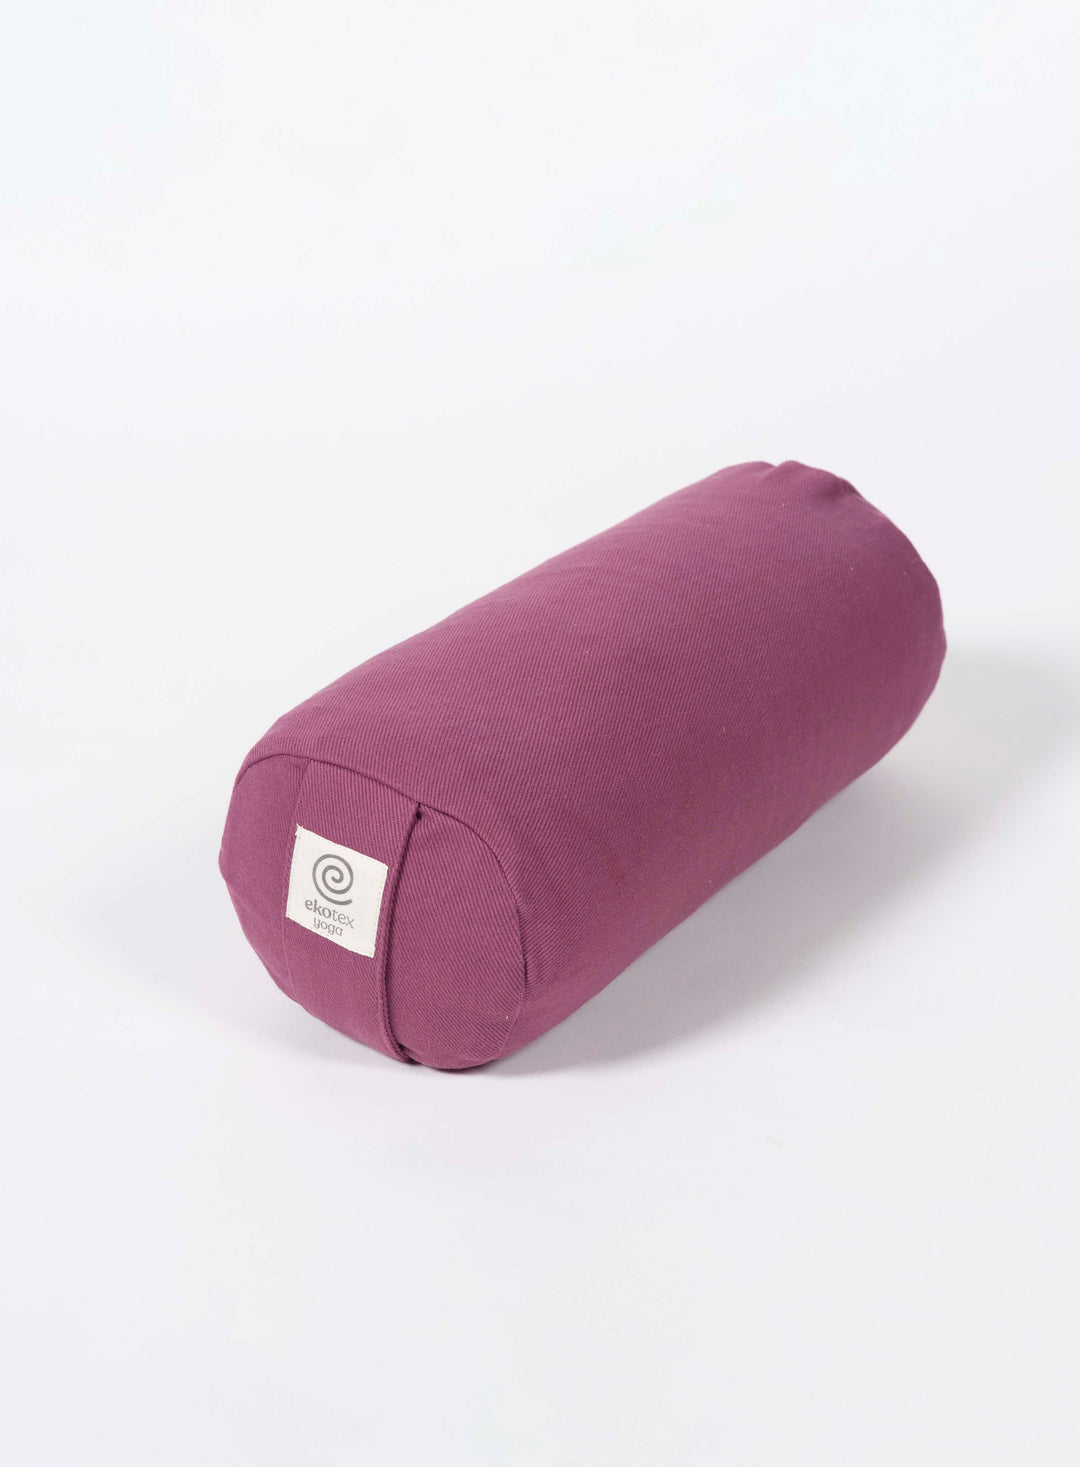 Ekotex Yoga Kapok / Berry Organic Cotton Mini Yoga Bolster - Pack of 4